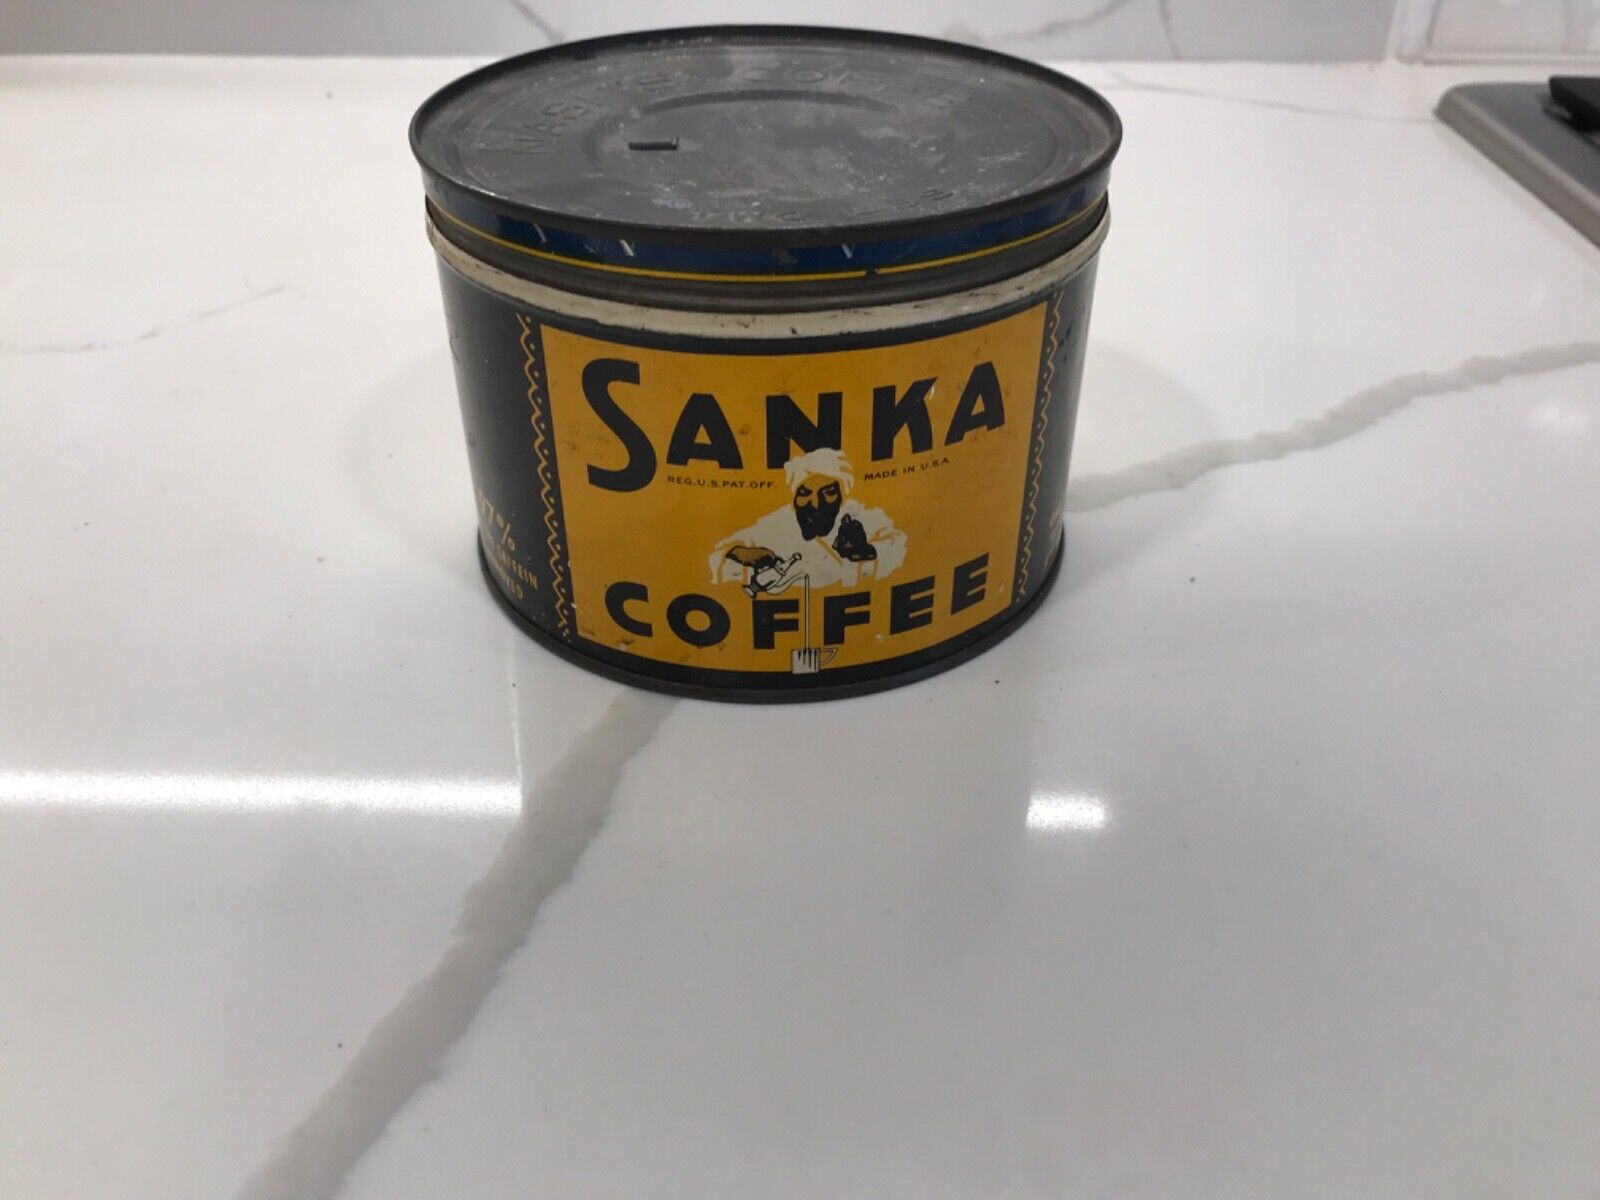 Antq One Pound Sanka Coffee Tin with Nash’s Coffee Two Lbs Tin Lid -free postage